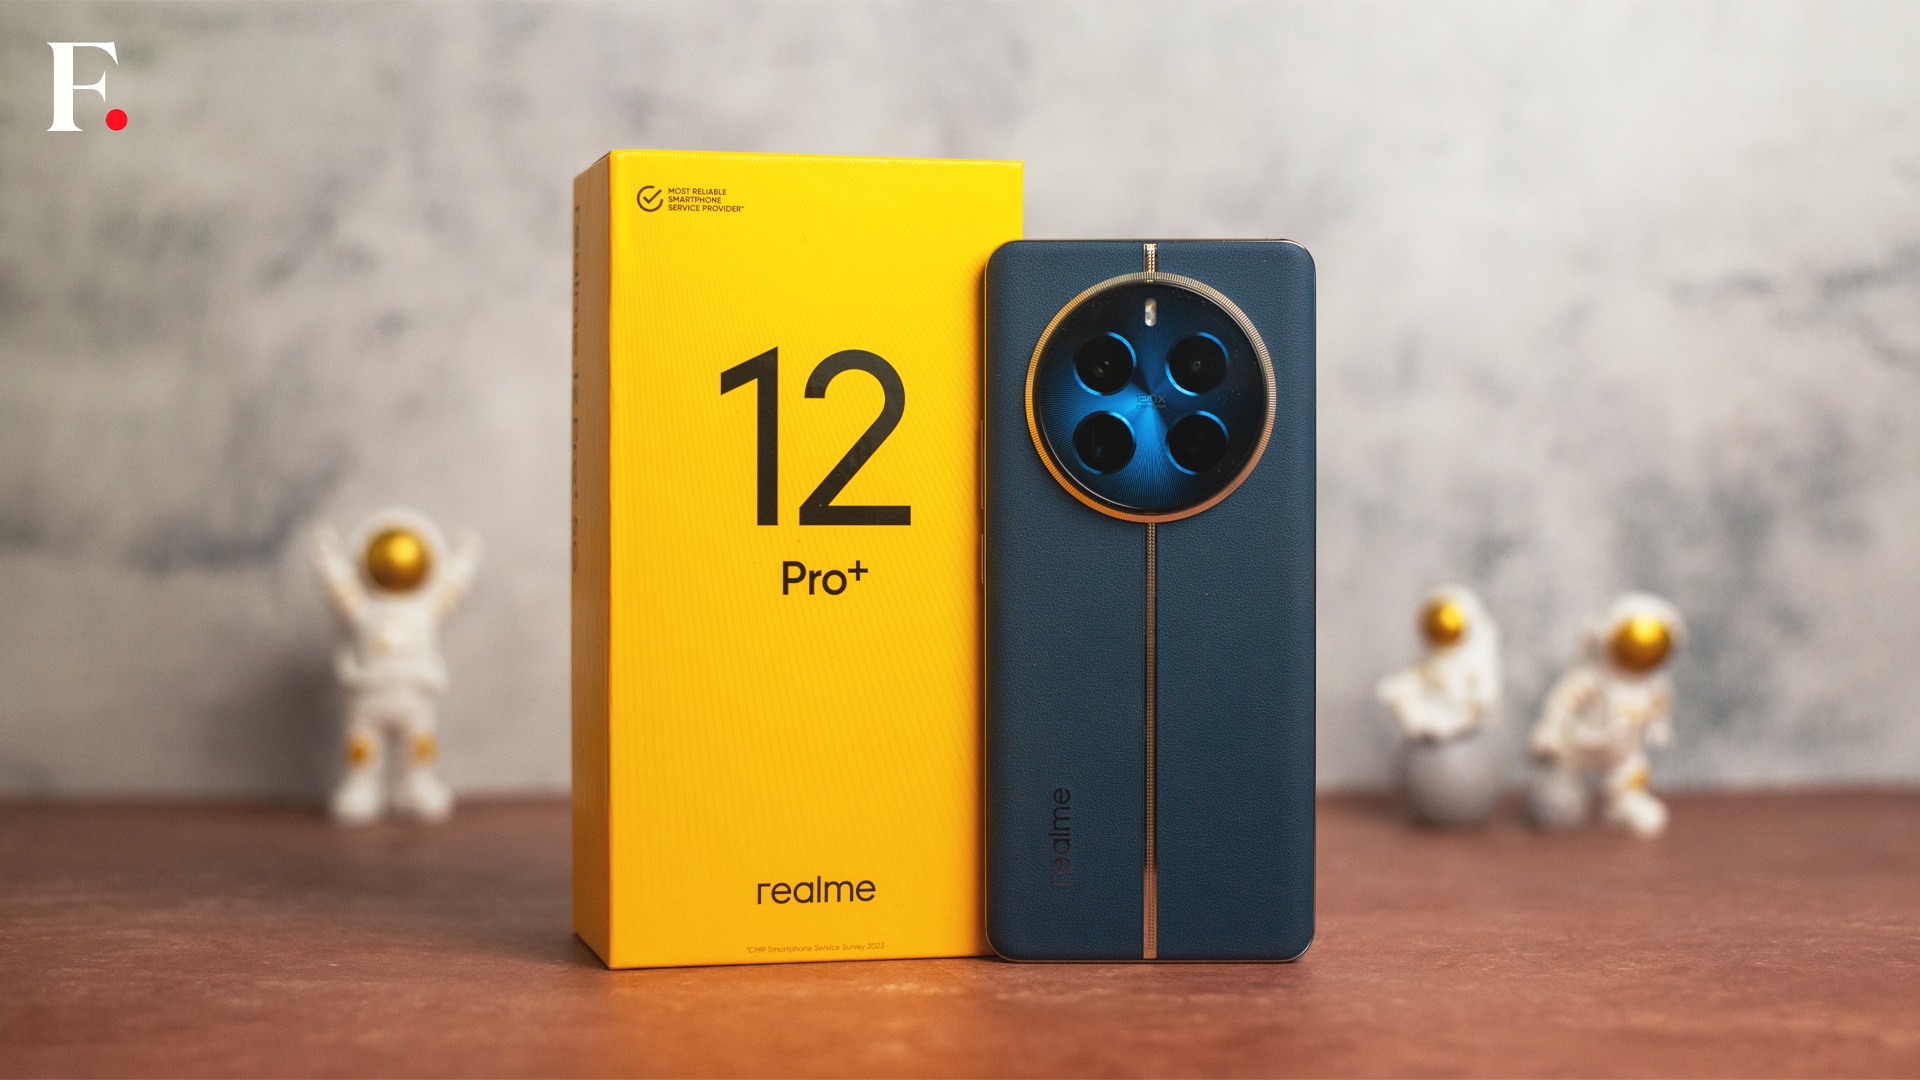 سری Realme 12 Pro در هند با قیمت ۲۵۹۹۹ روپیه راه اندازی شد.  مشخصات و ویژگی ها را بررسی کنید